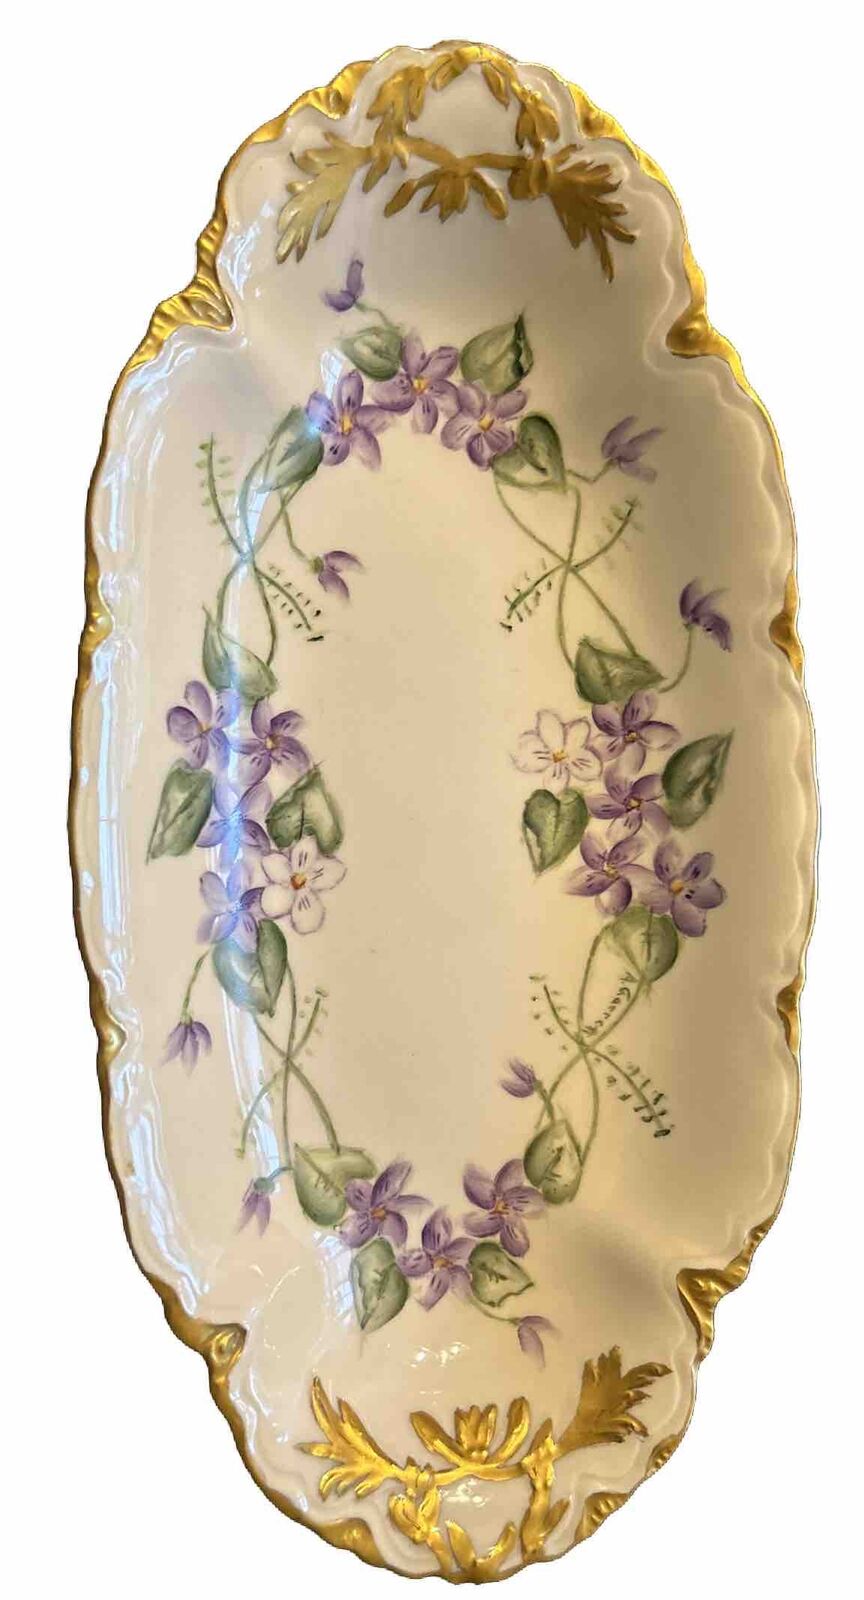 Handpainted porcelain bowl gold trim purple flowers 12x6